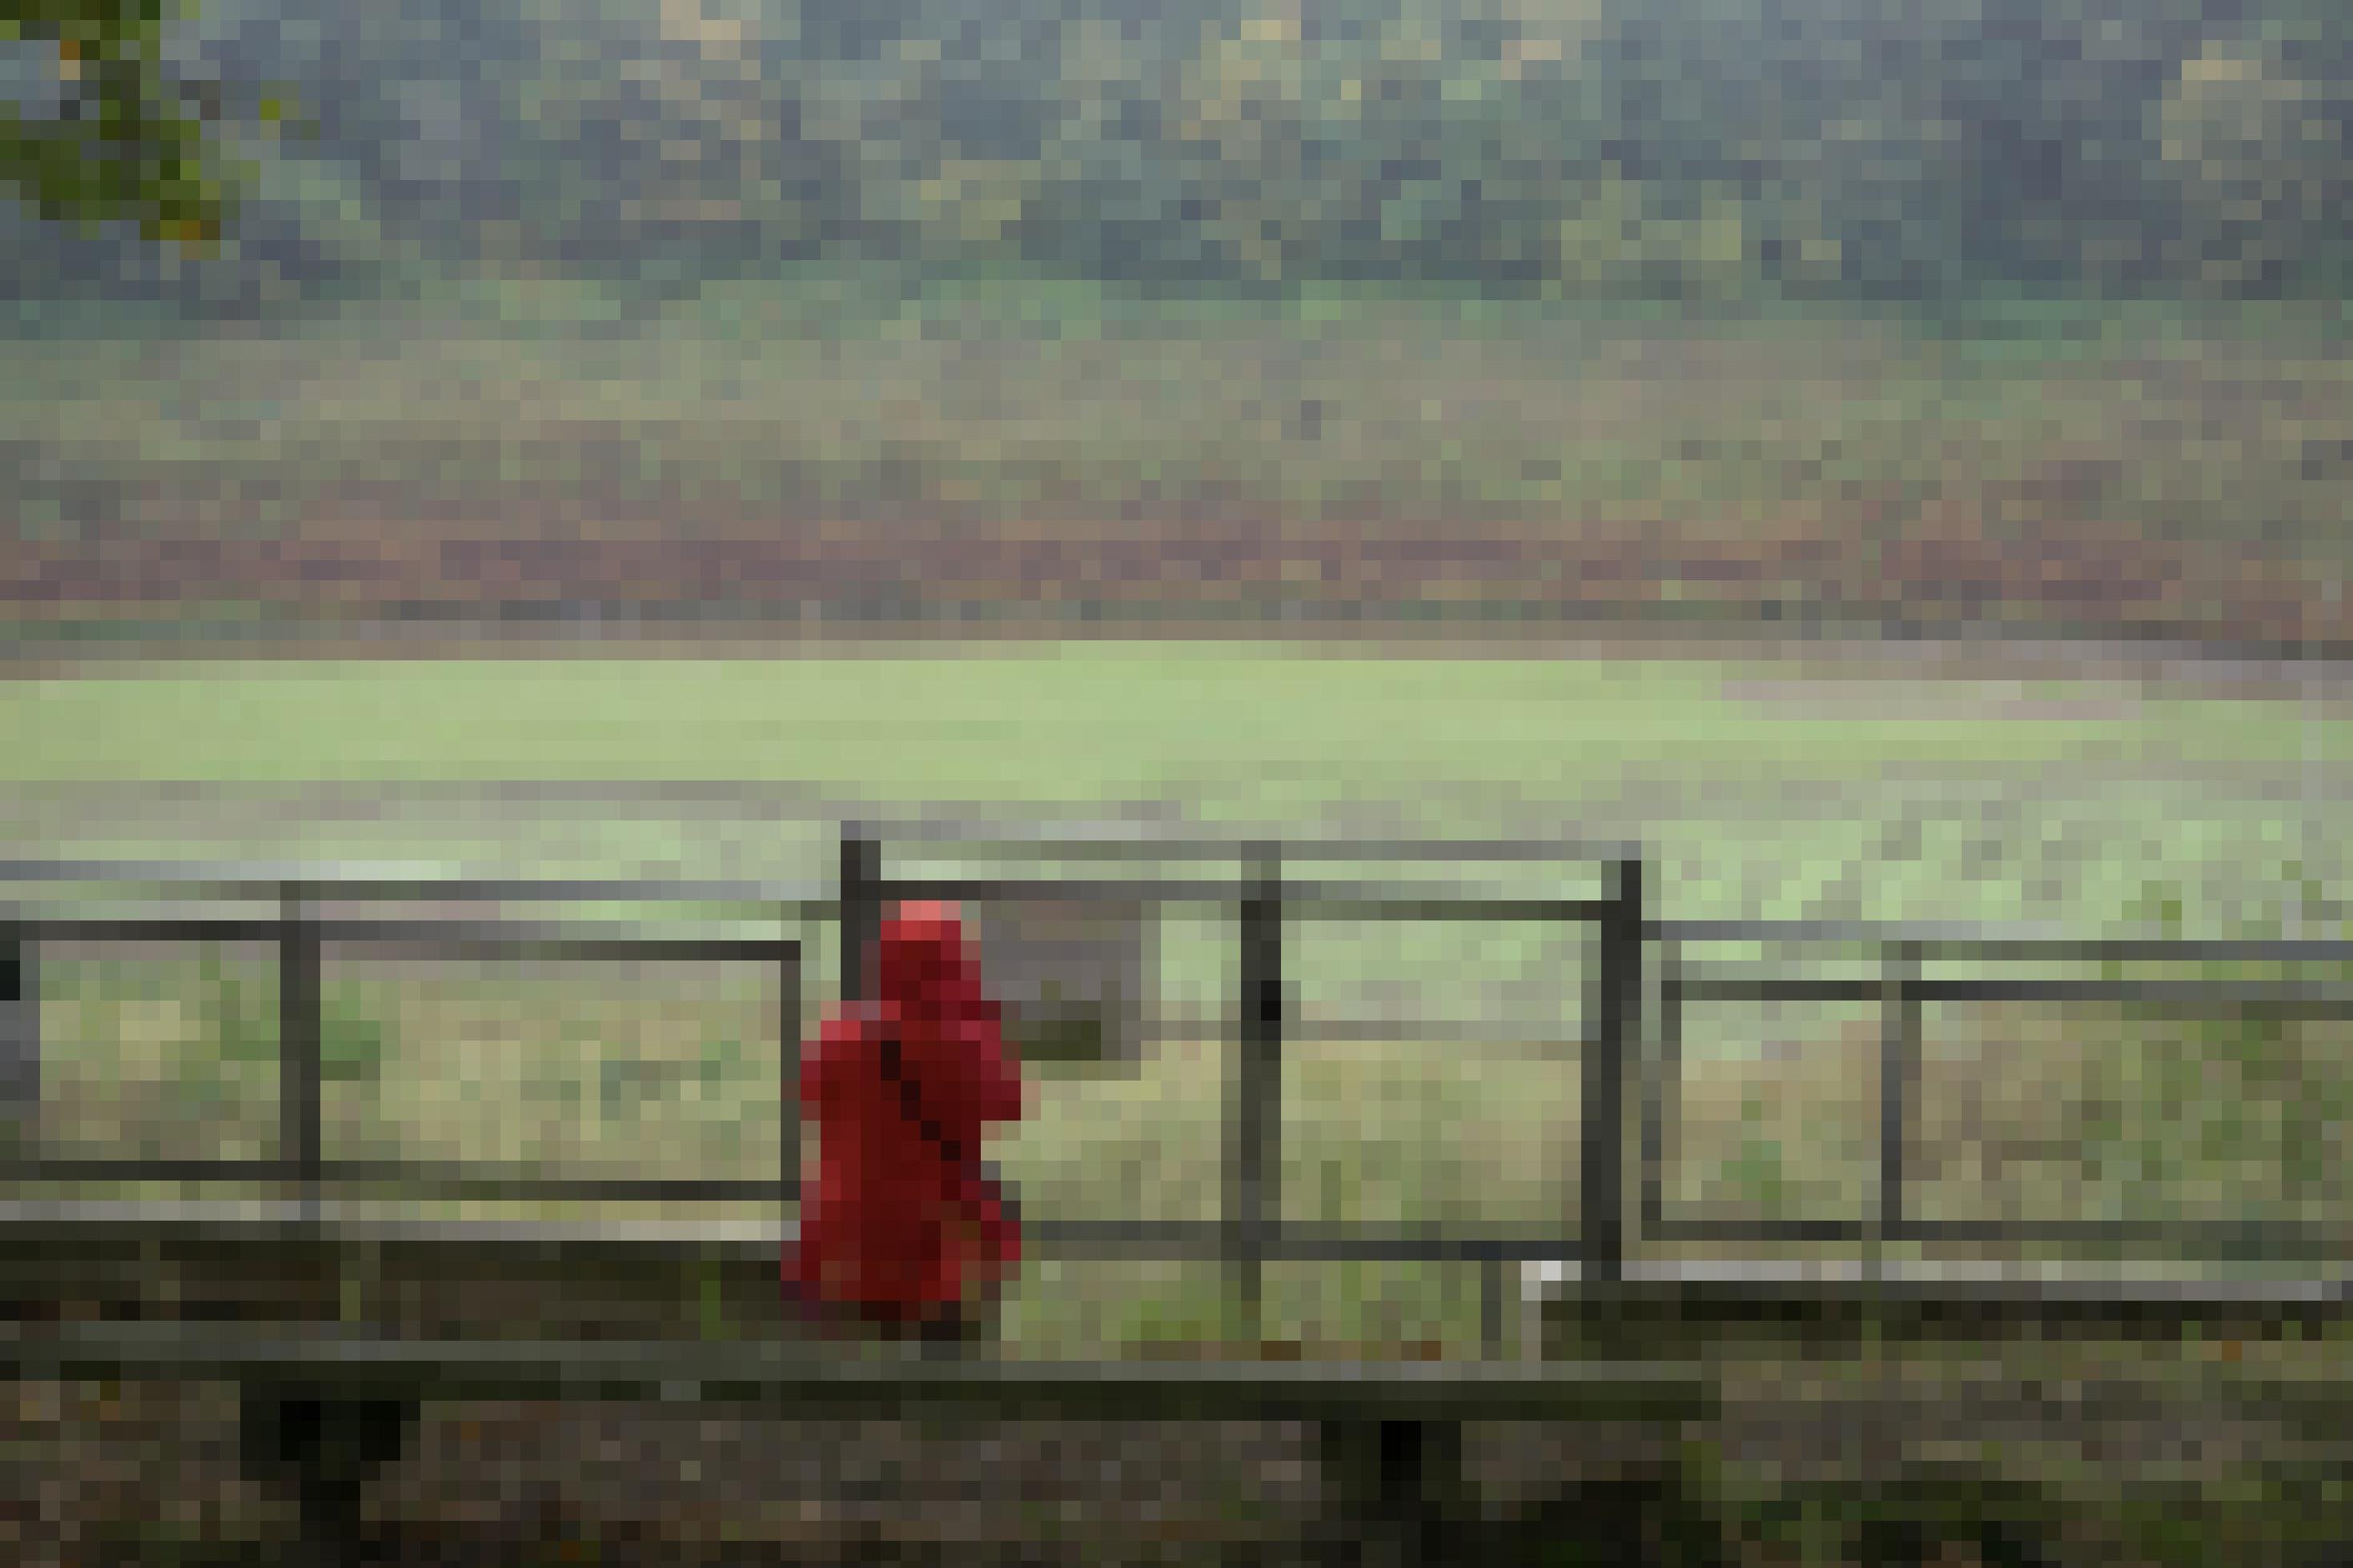 Zaun vor trocken gelegtem Stausee, davor eine Person mit roter Regenjacke